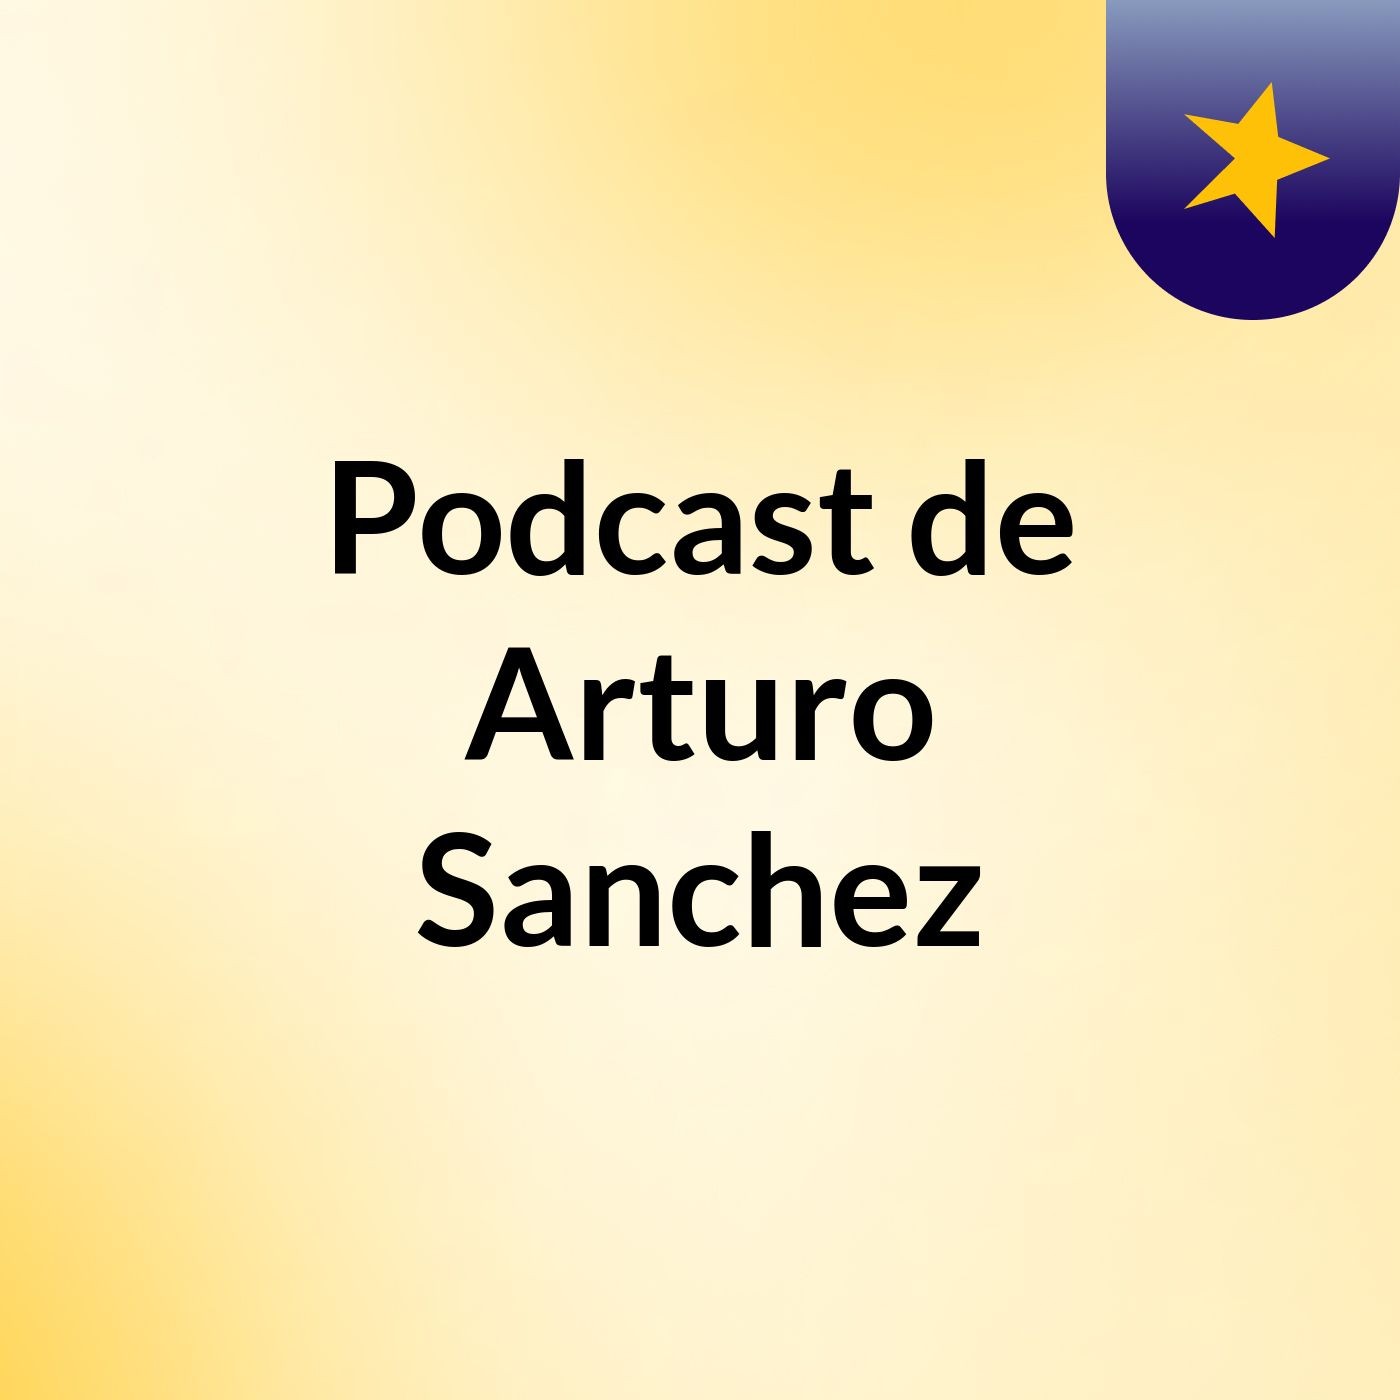 Podcast de Arturo Sanchez